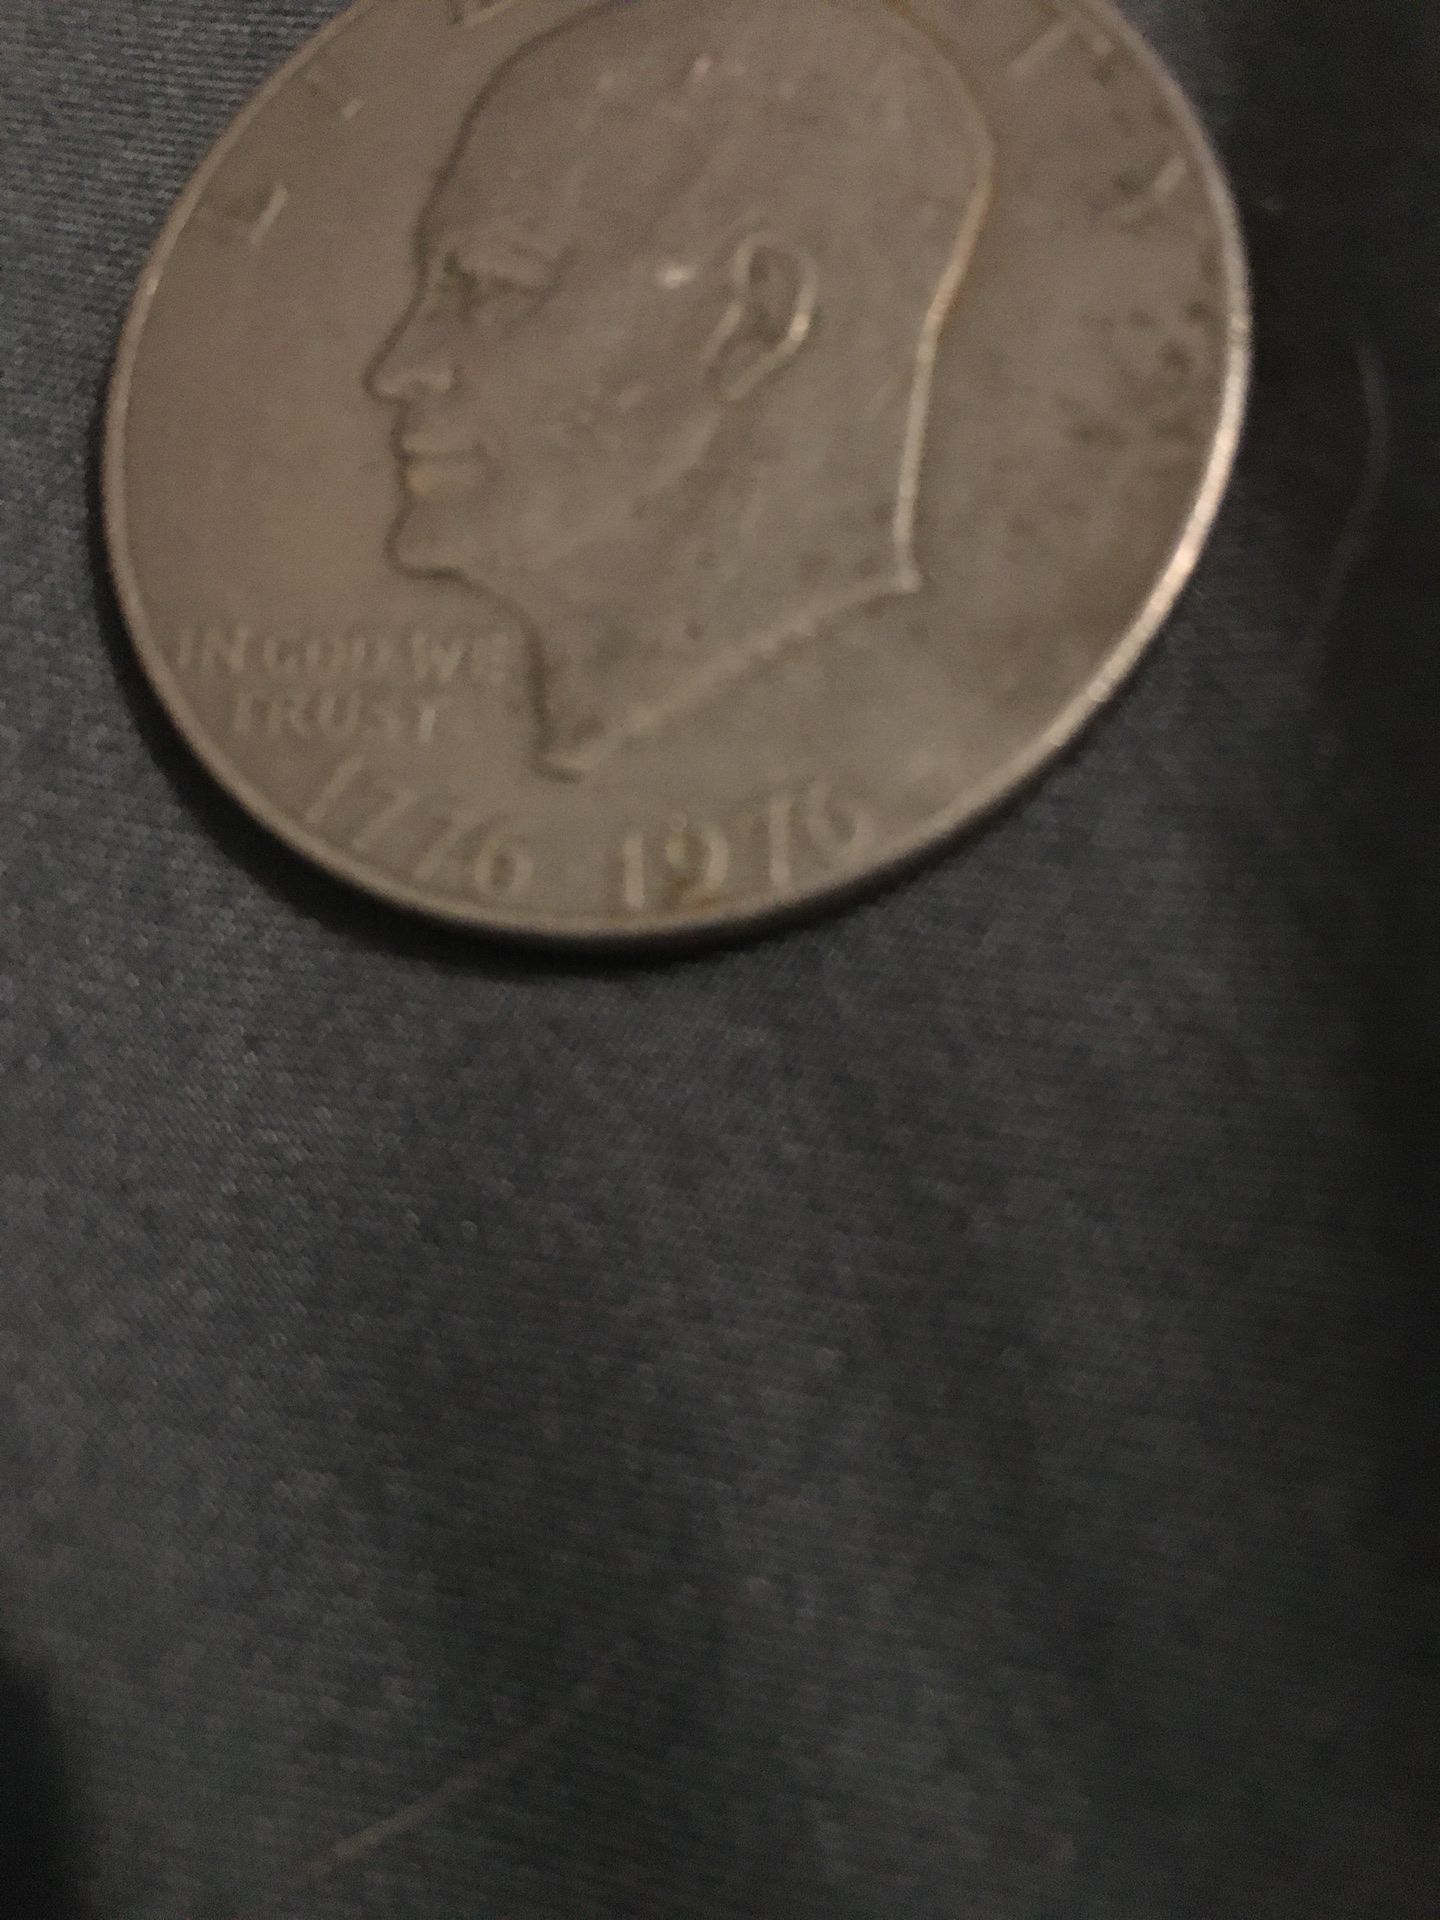 1976 dollar coin